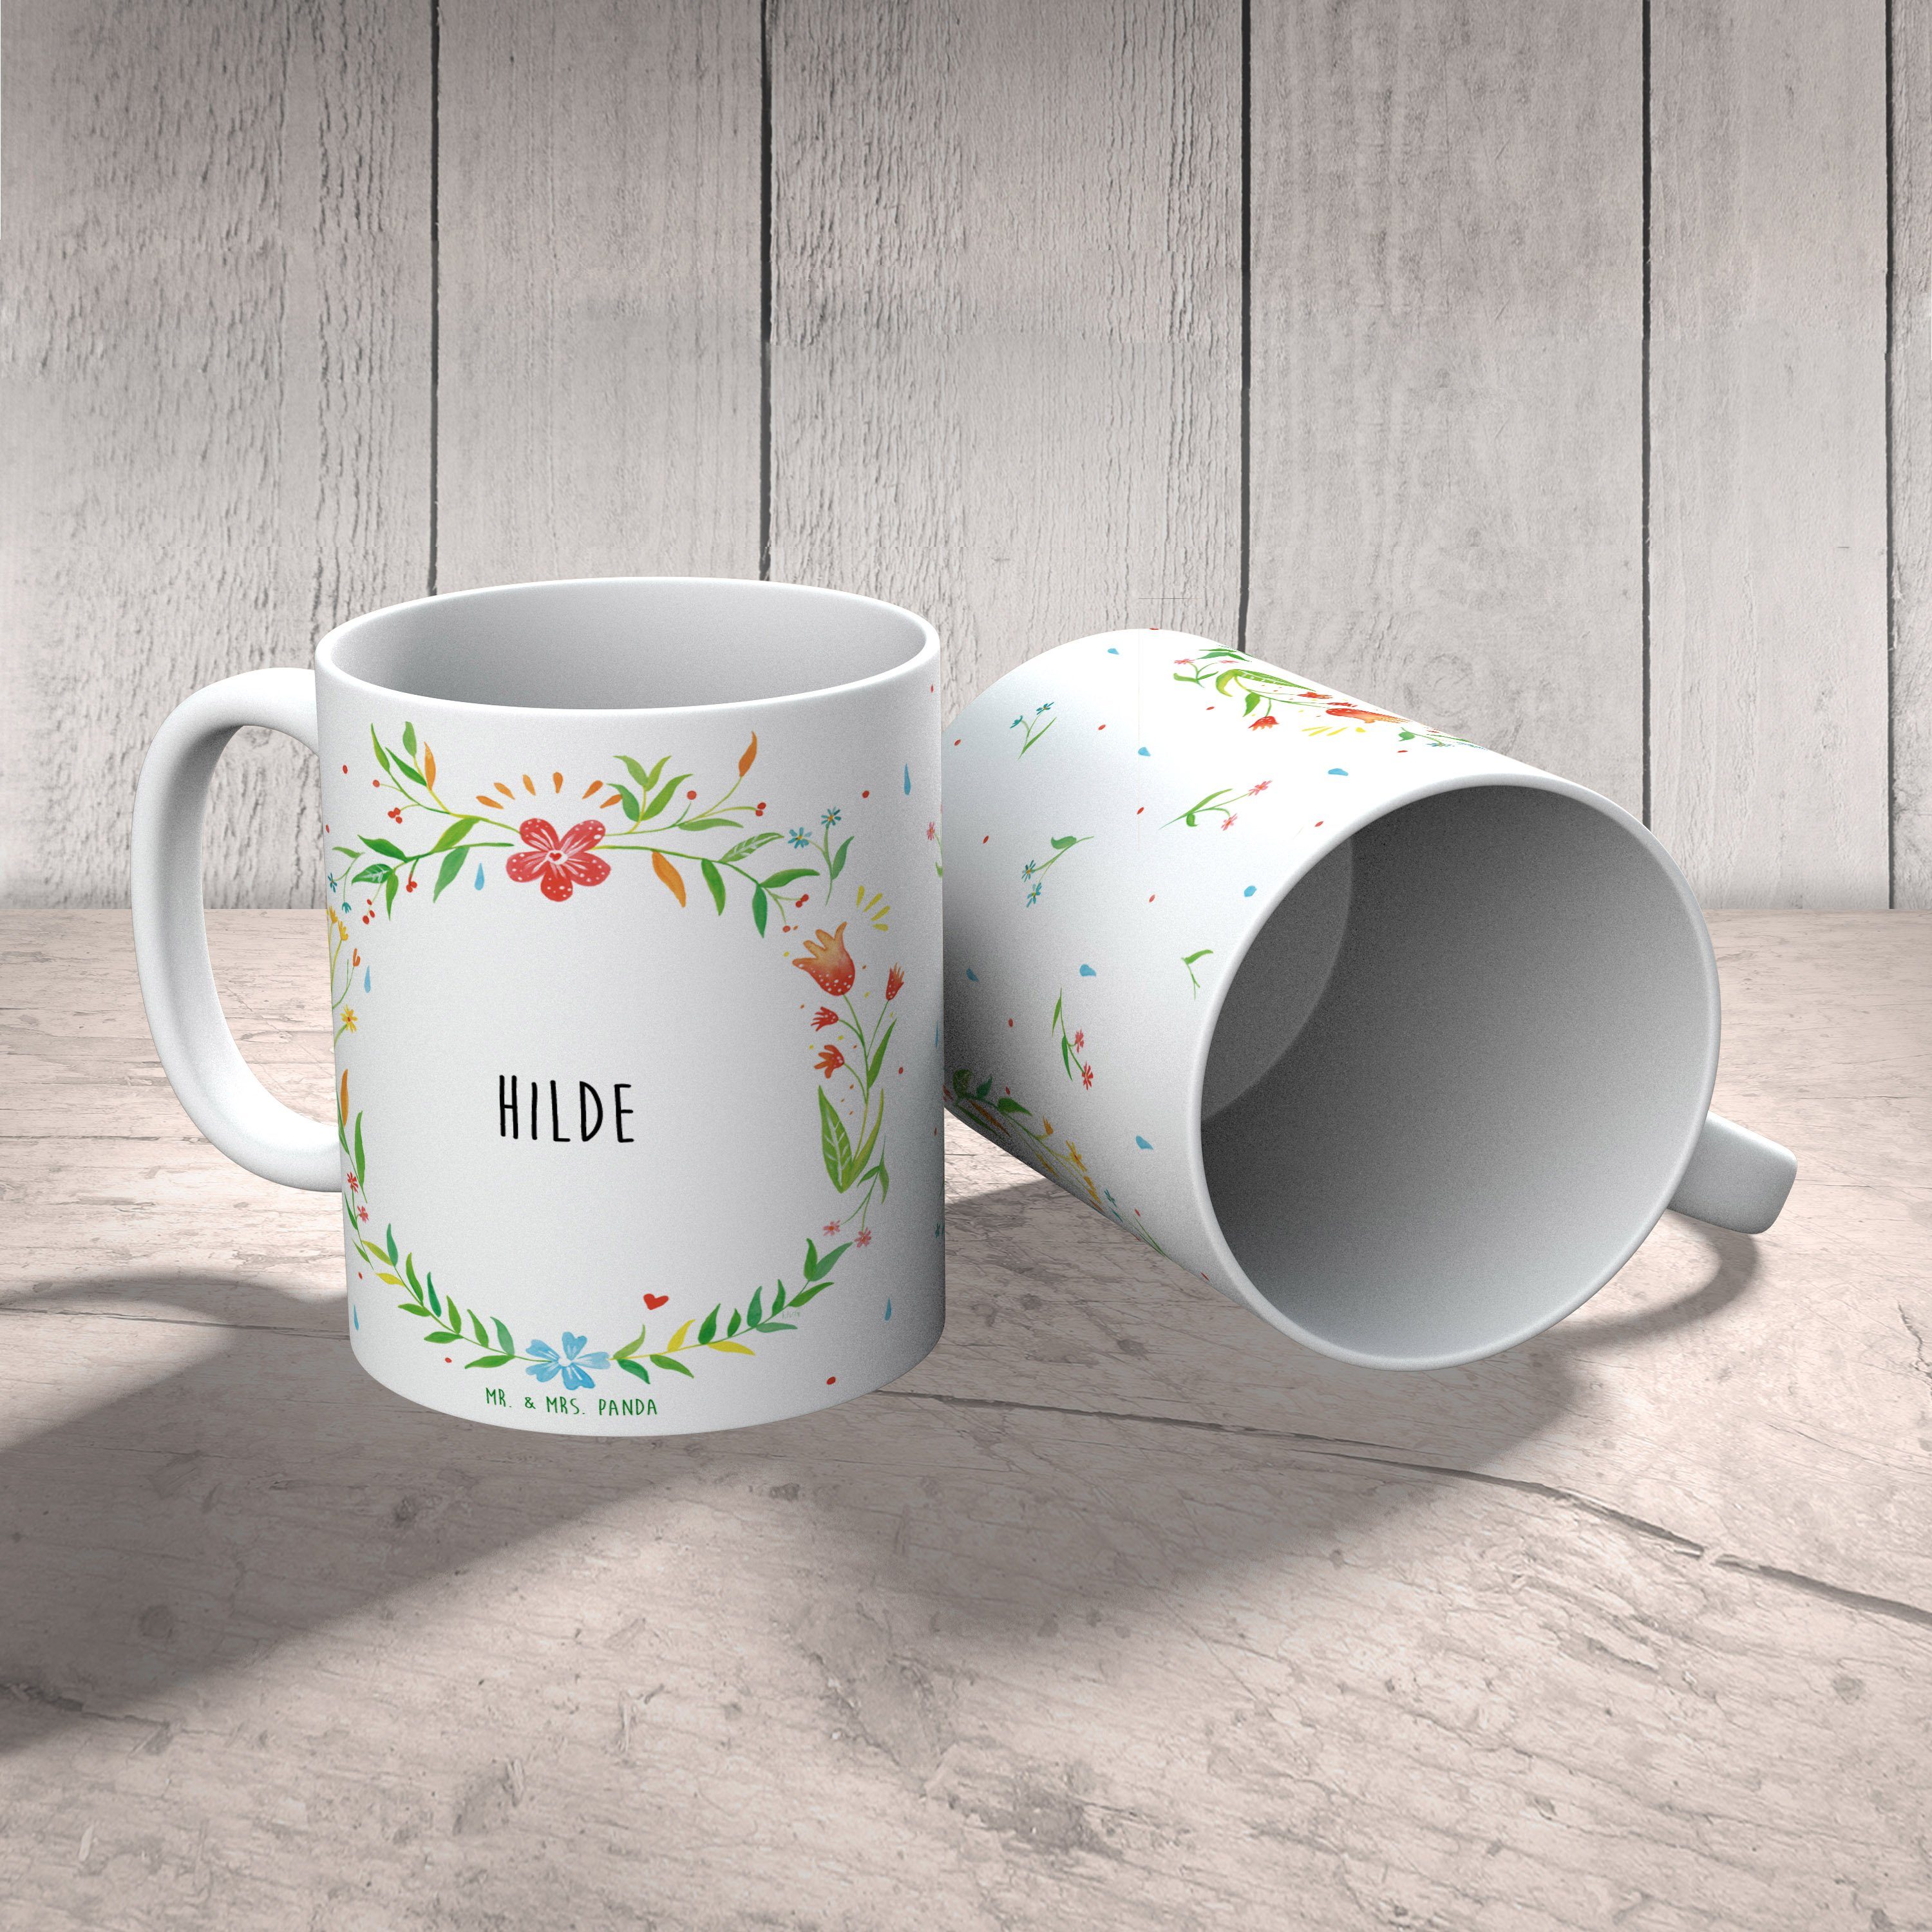 & Teetasse, - Mr. Geschenk, Tasse, Kaffeetasse, Hilde Mrs. Keramik Tasse Geschenk Panda Kaffeebecher,